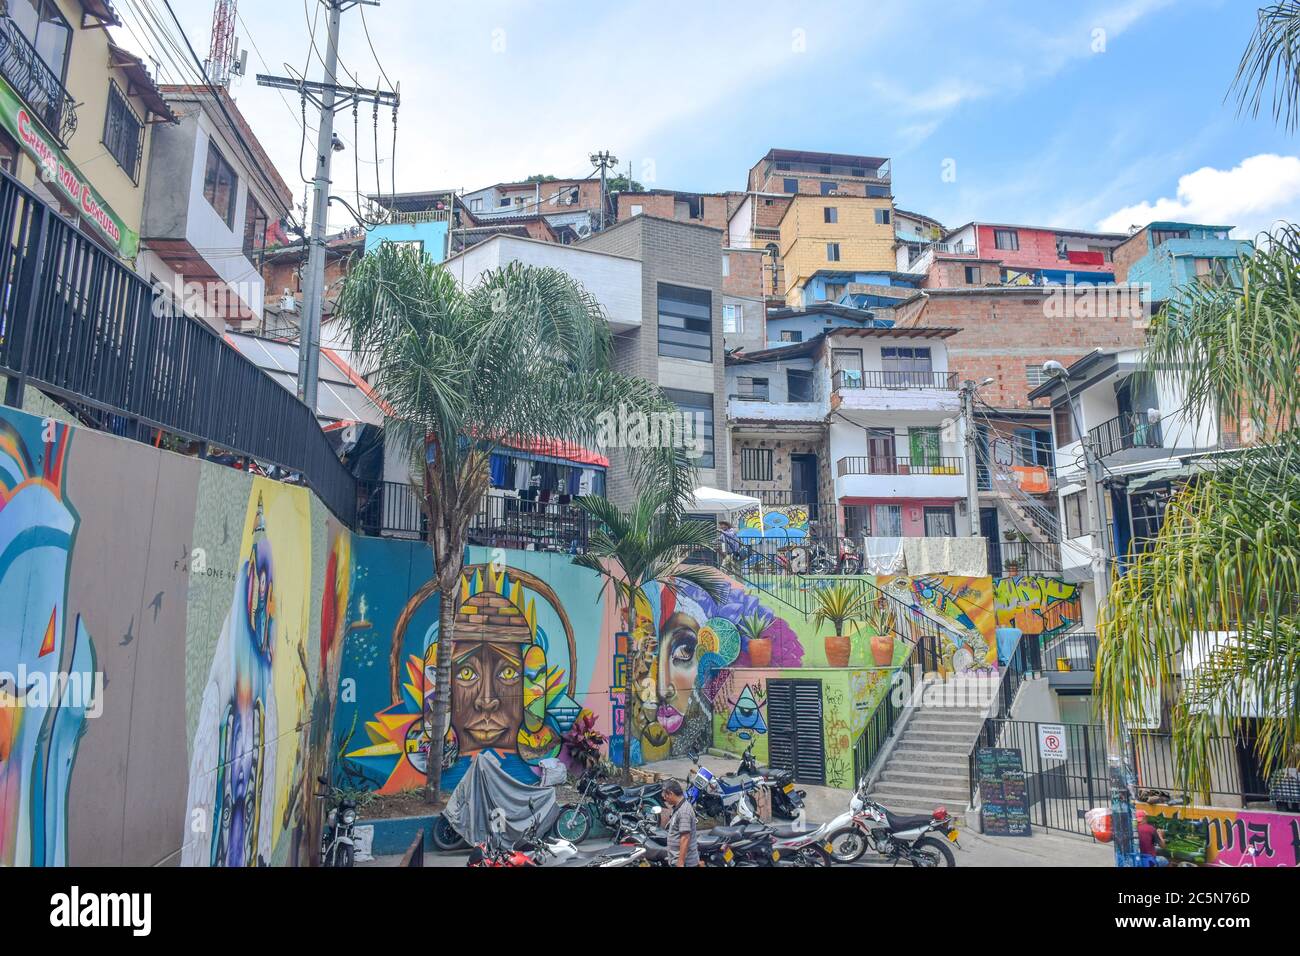 Comuna 13 Medellin Colombia Stock Photo Alamy